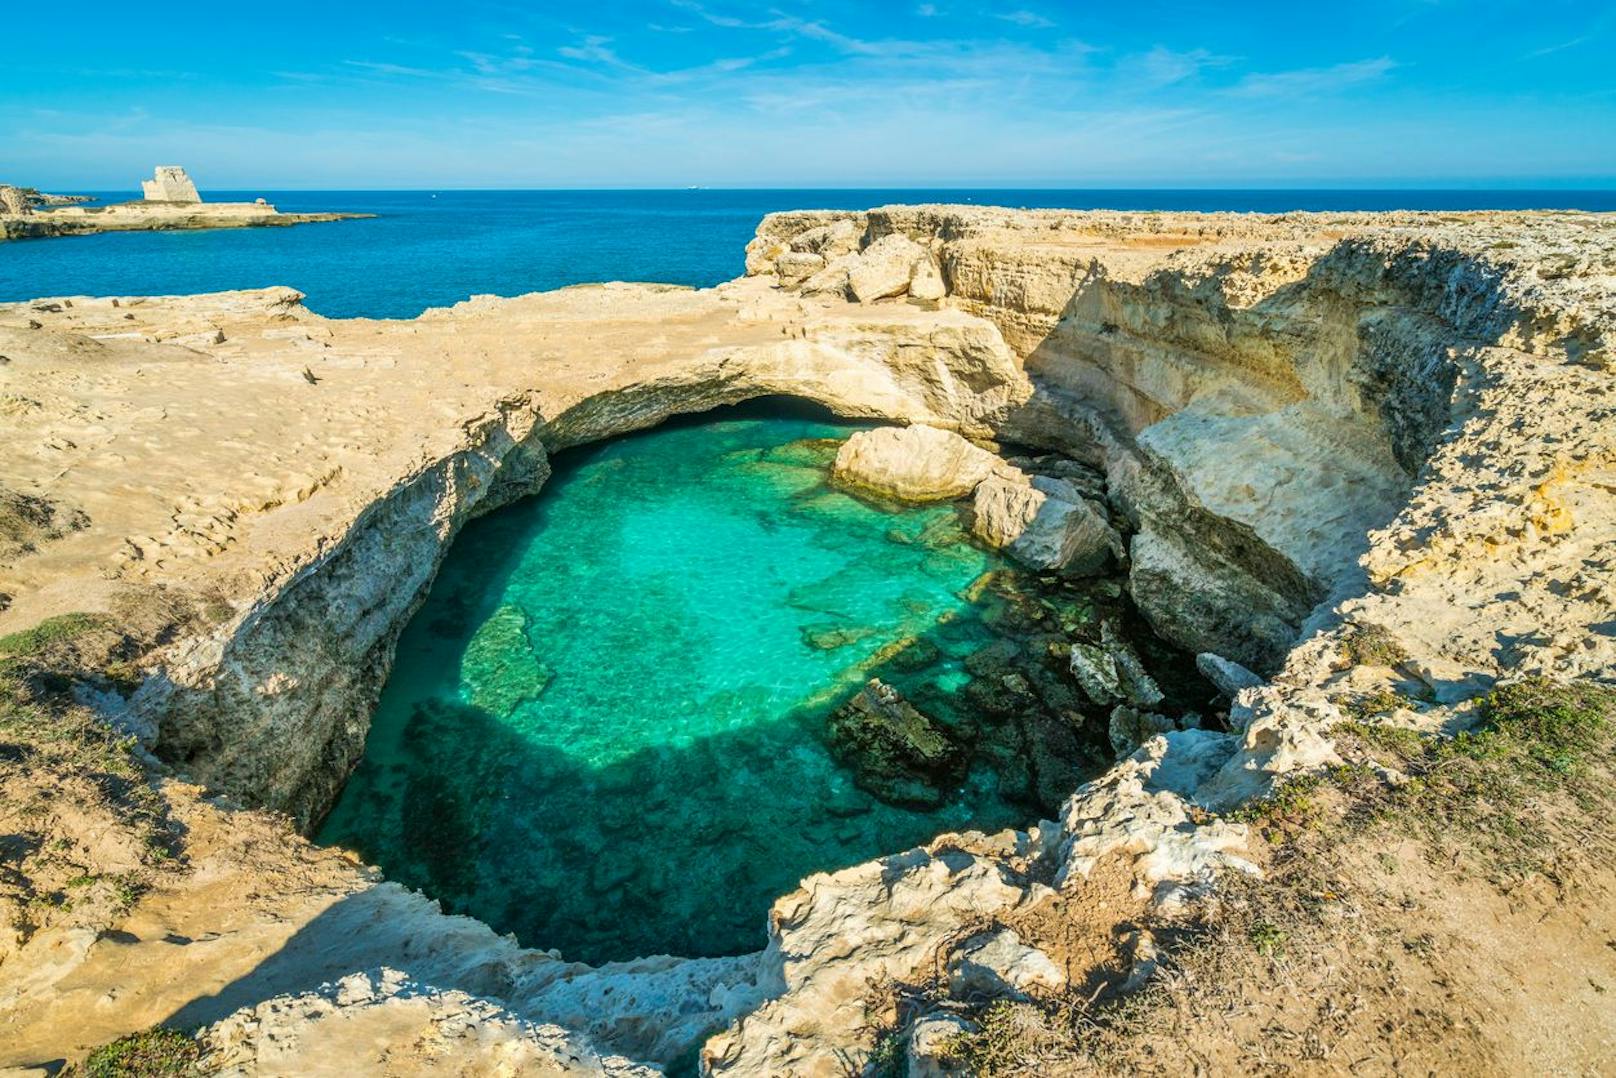 Einst konnte man in der Grotta della Poesia in Apulien, Italien, schwimmen. Aufgrund der brüchigen Felsen herrscht aktuell jedoch Badeverbot. Immerhin: Die Grotte darf zumindest besichtigt werden.